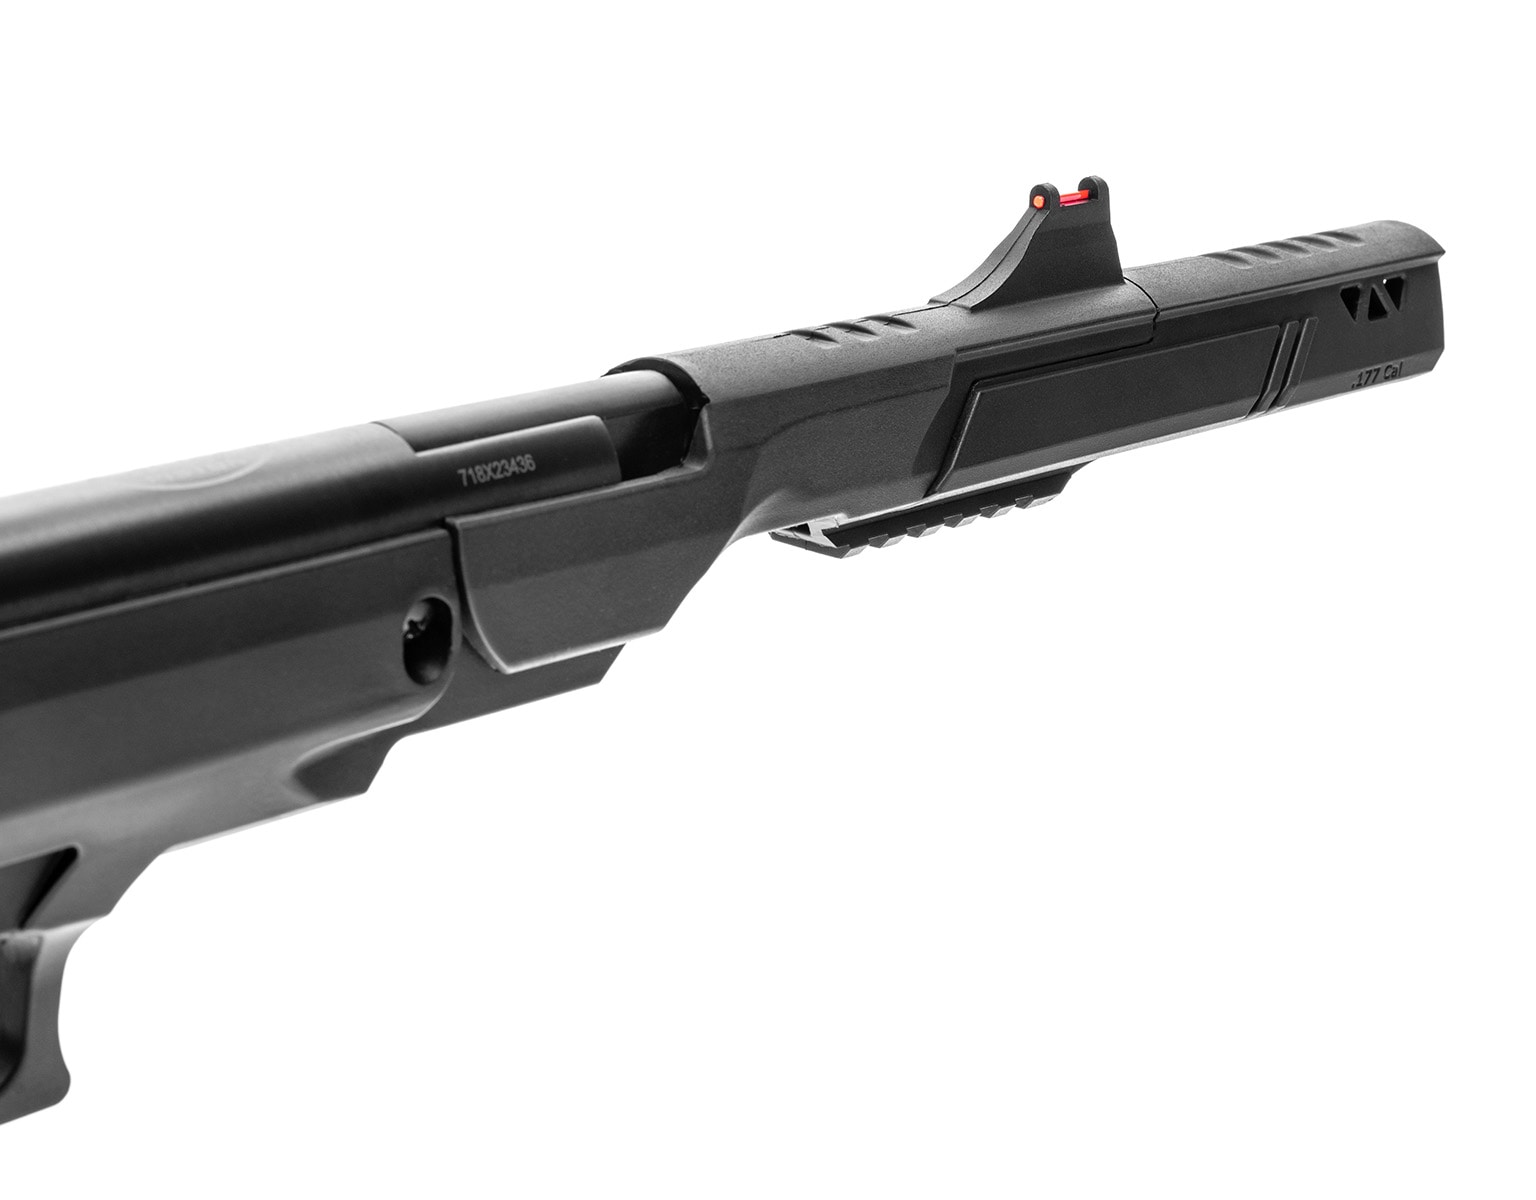 Wiatrówka Crosman-Benjamin Trail NP Pistol Mk. II 4,5 mm